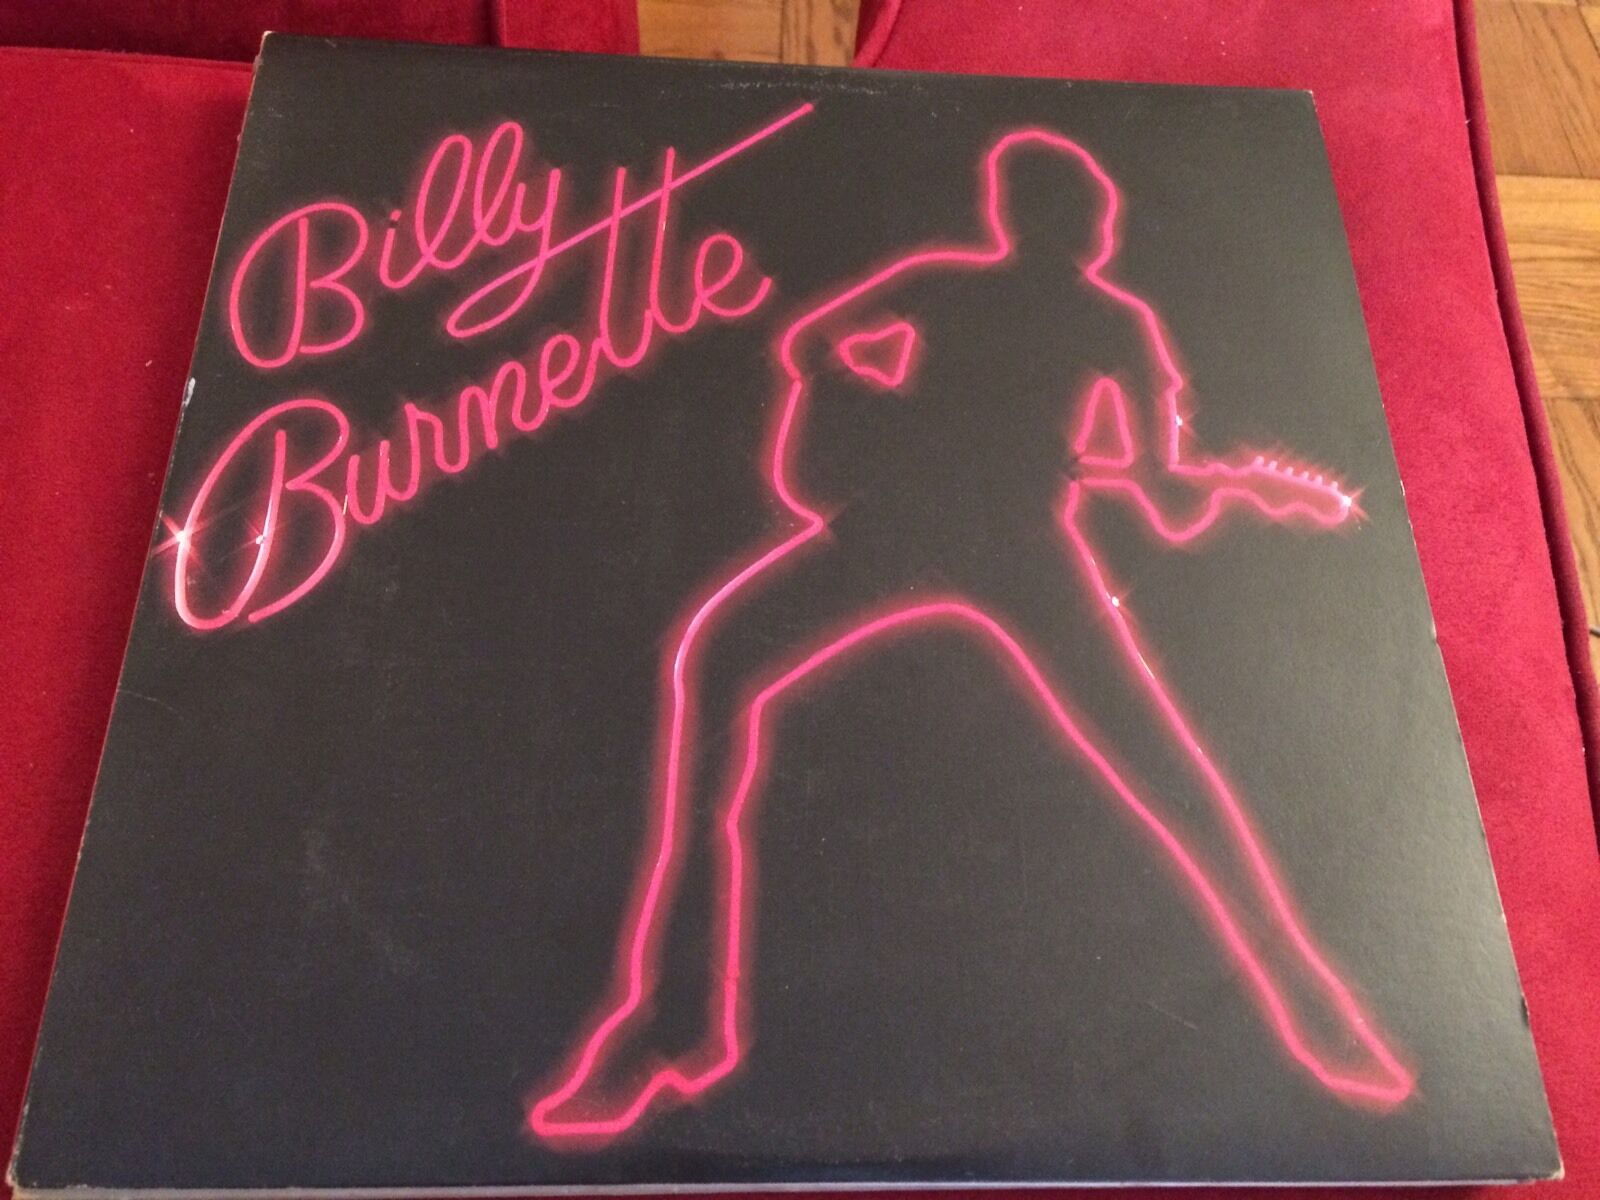 Billy Burnette vinyl album